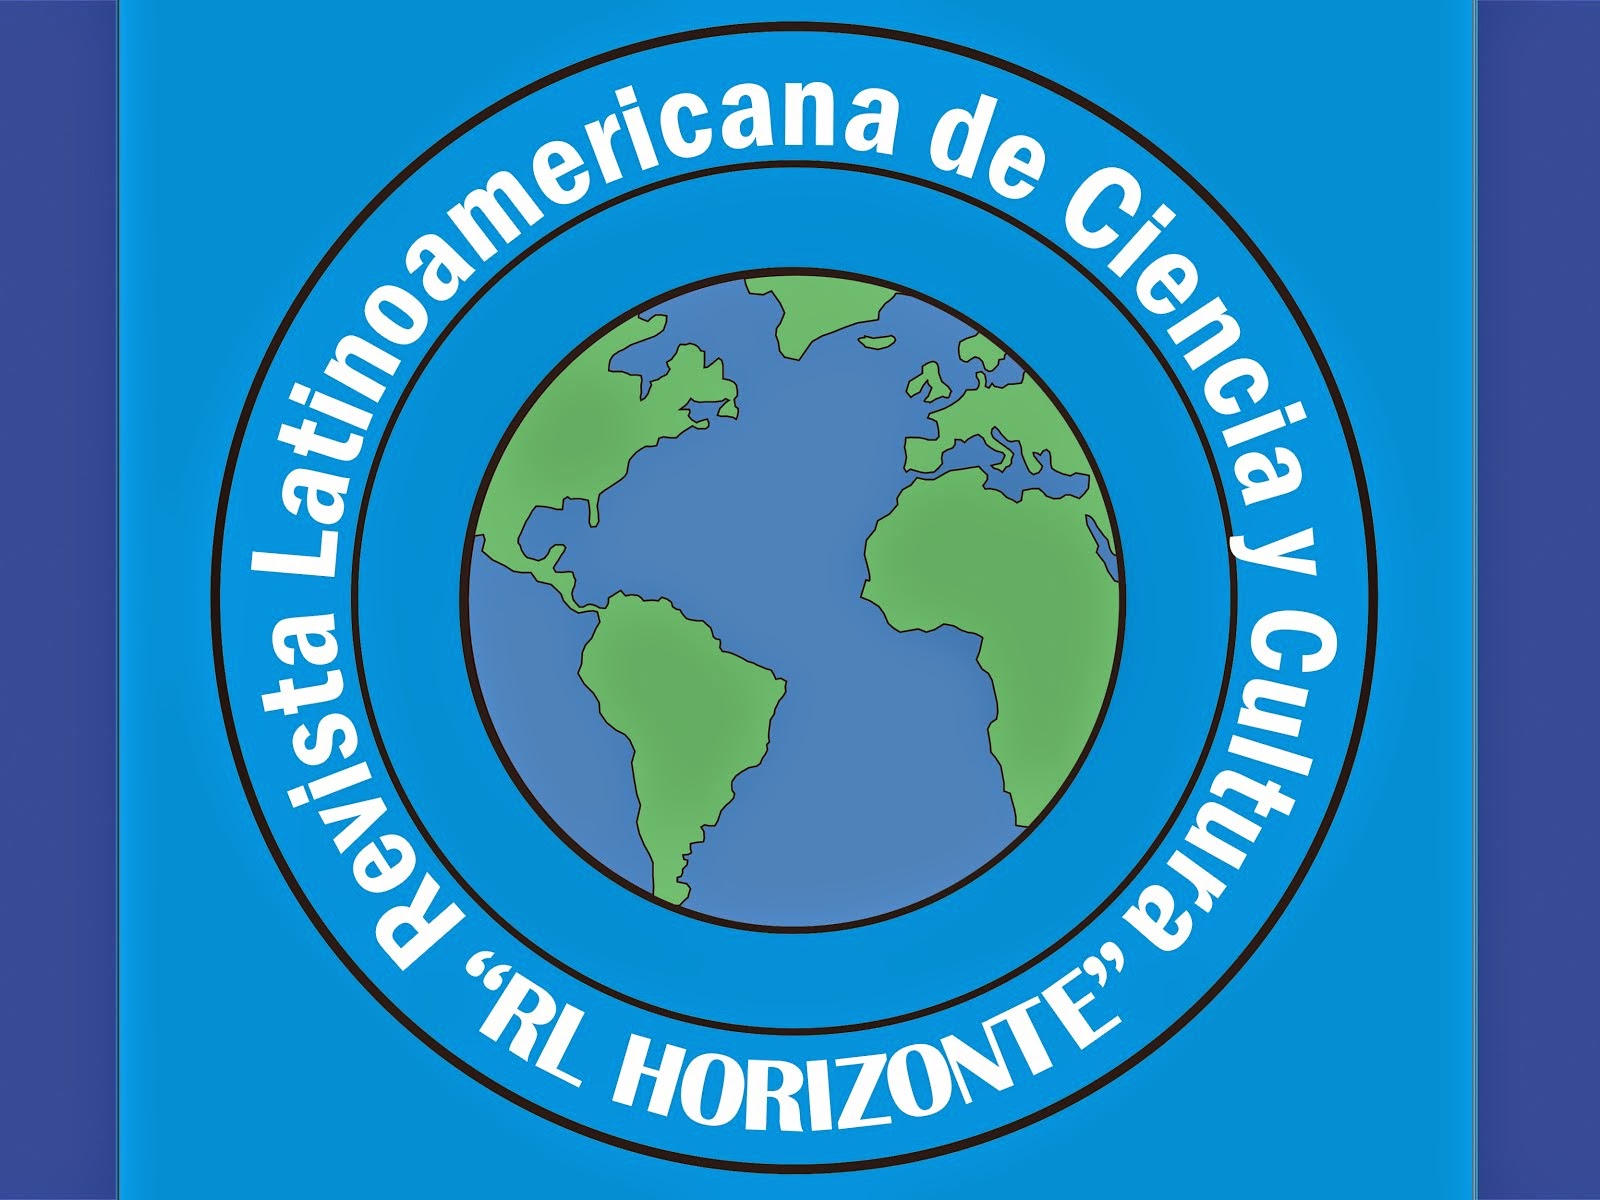 Revista Latinoamericana de Ciencia y Cultura "RL HORIZONTE"